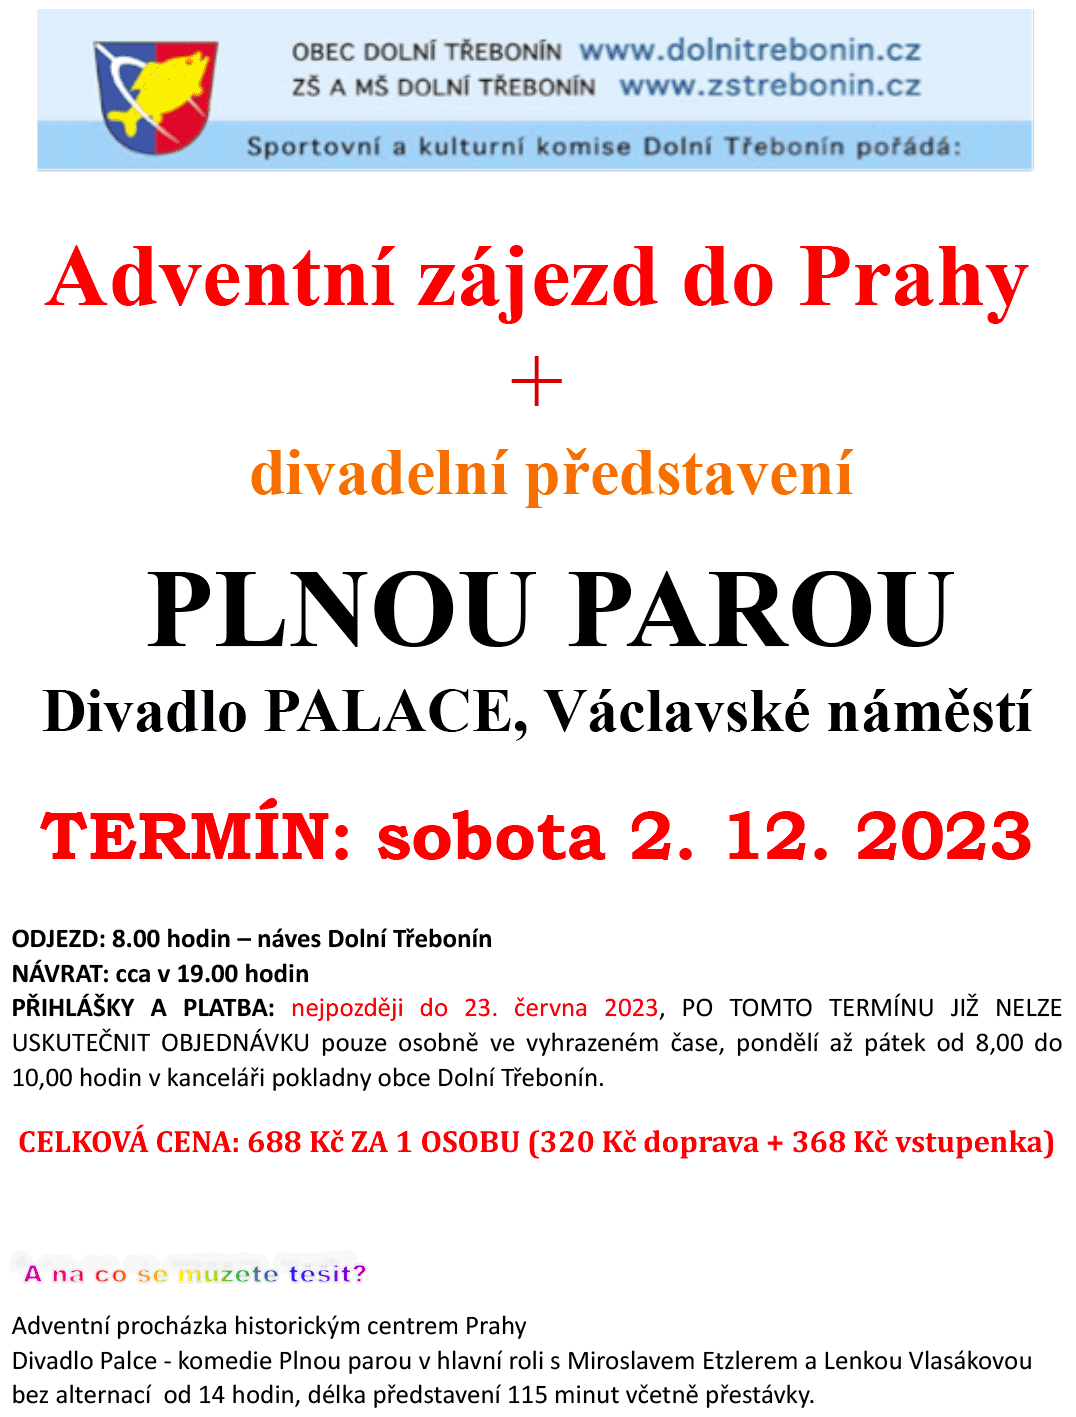 Adventní zájezd do Prahy s komedií Plnou parou v divadle Palace na Václavském náměstí